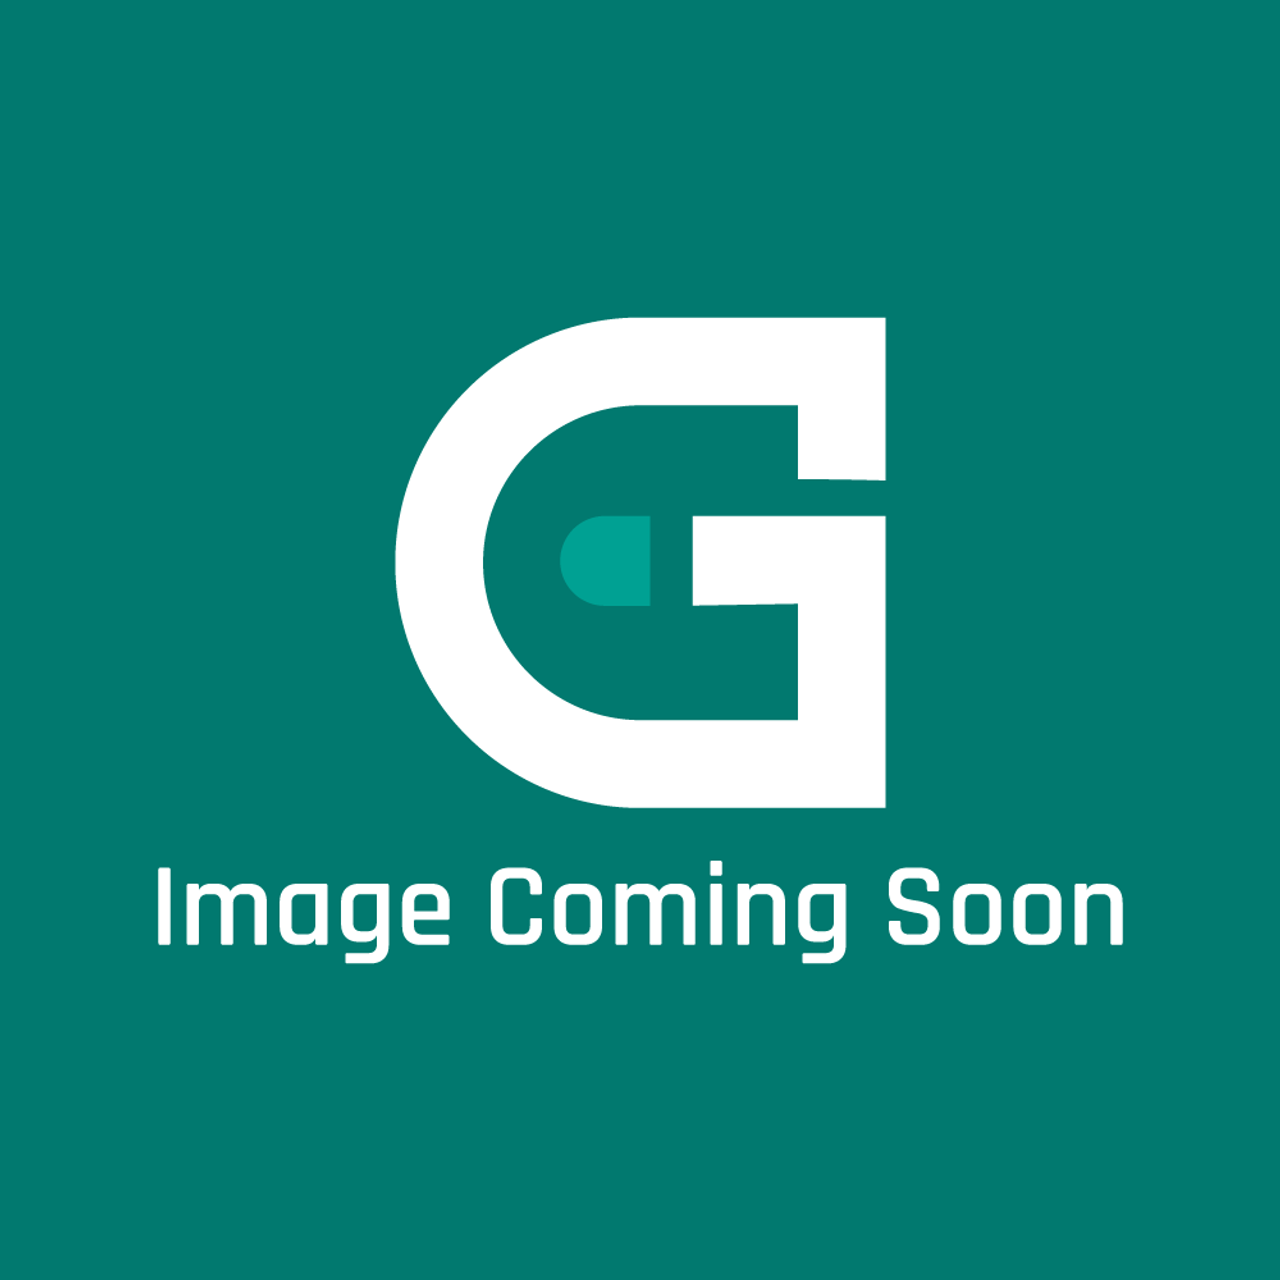 AGA Marvel A5243 - Photocell Oc3 Brn - Image Coming Soon!